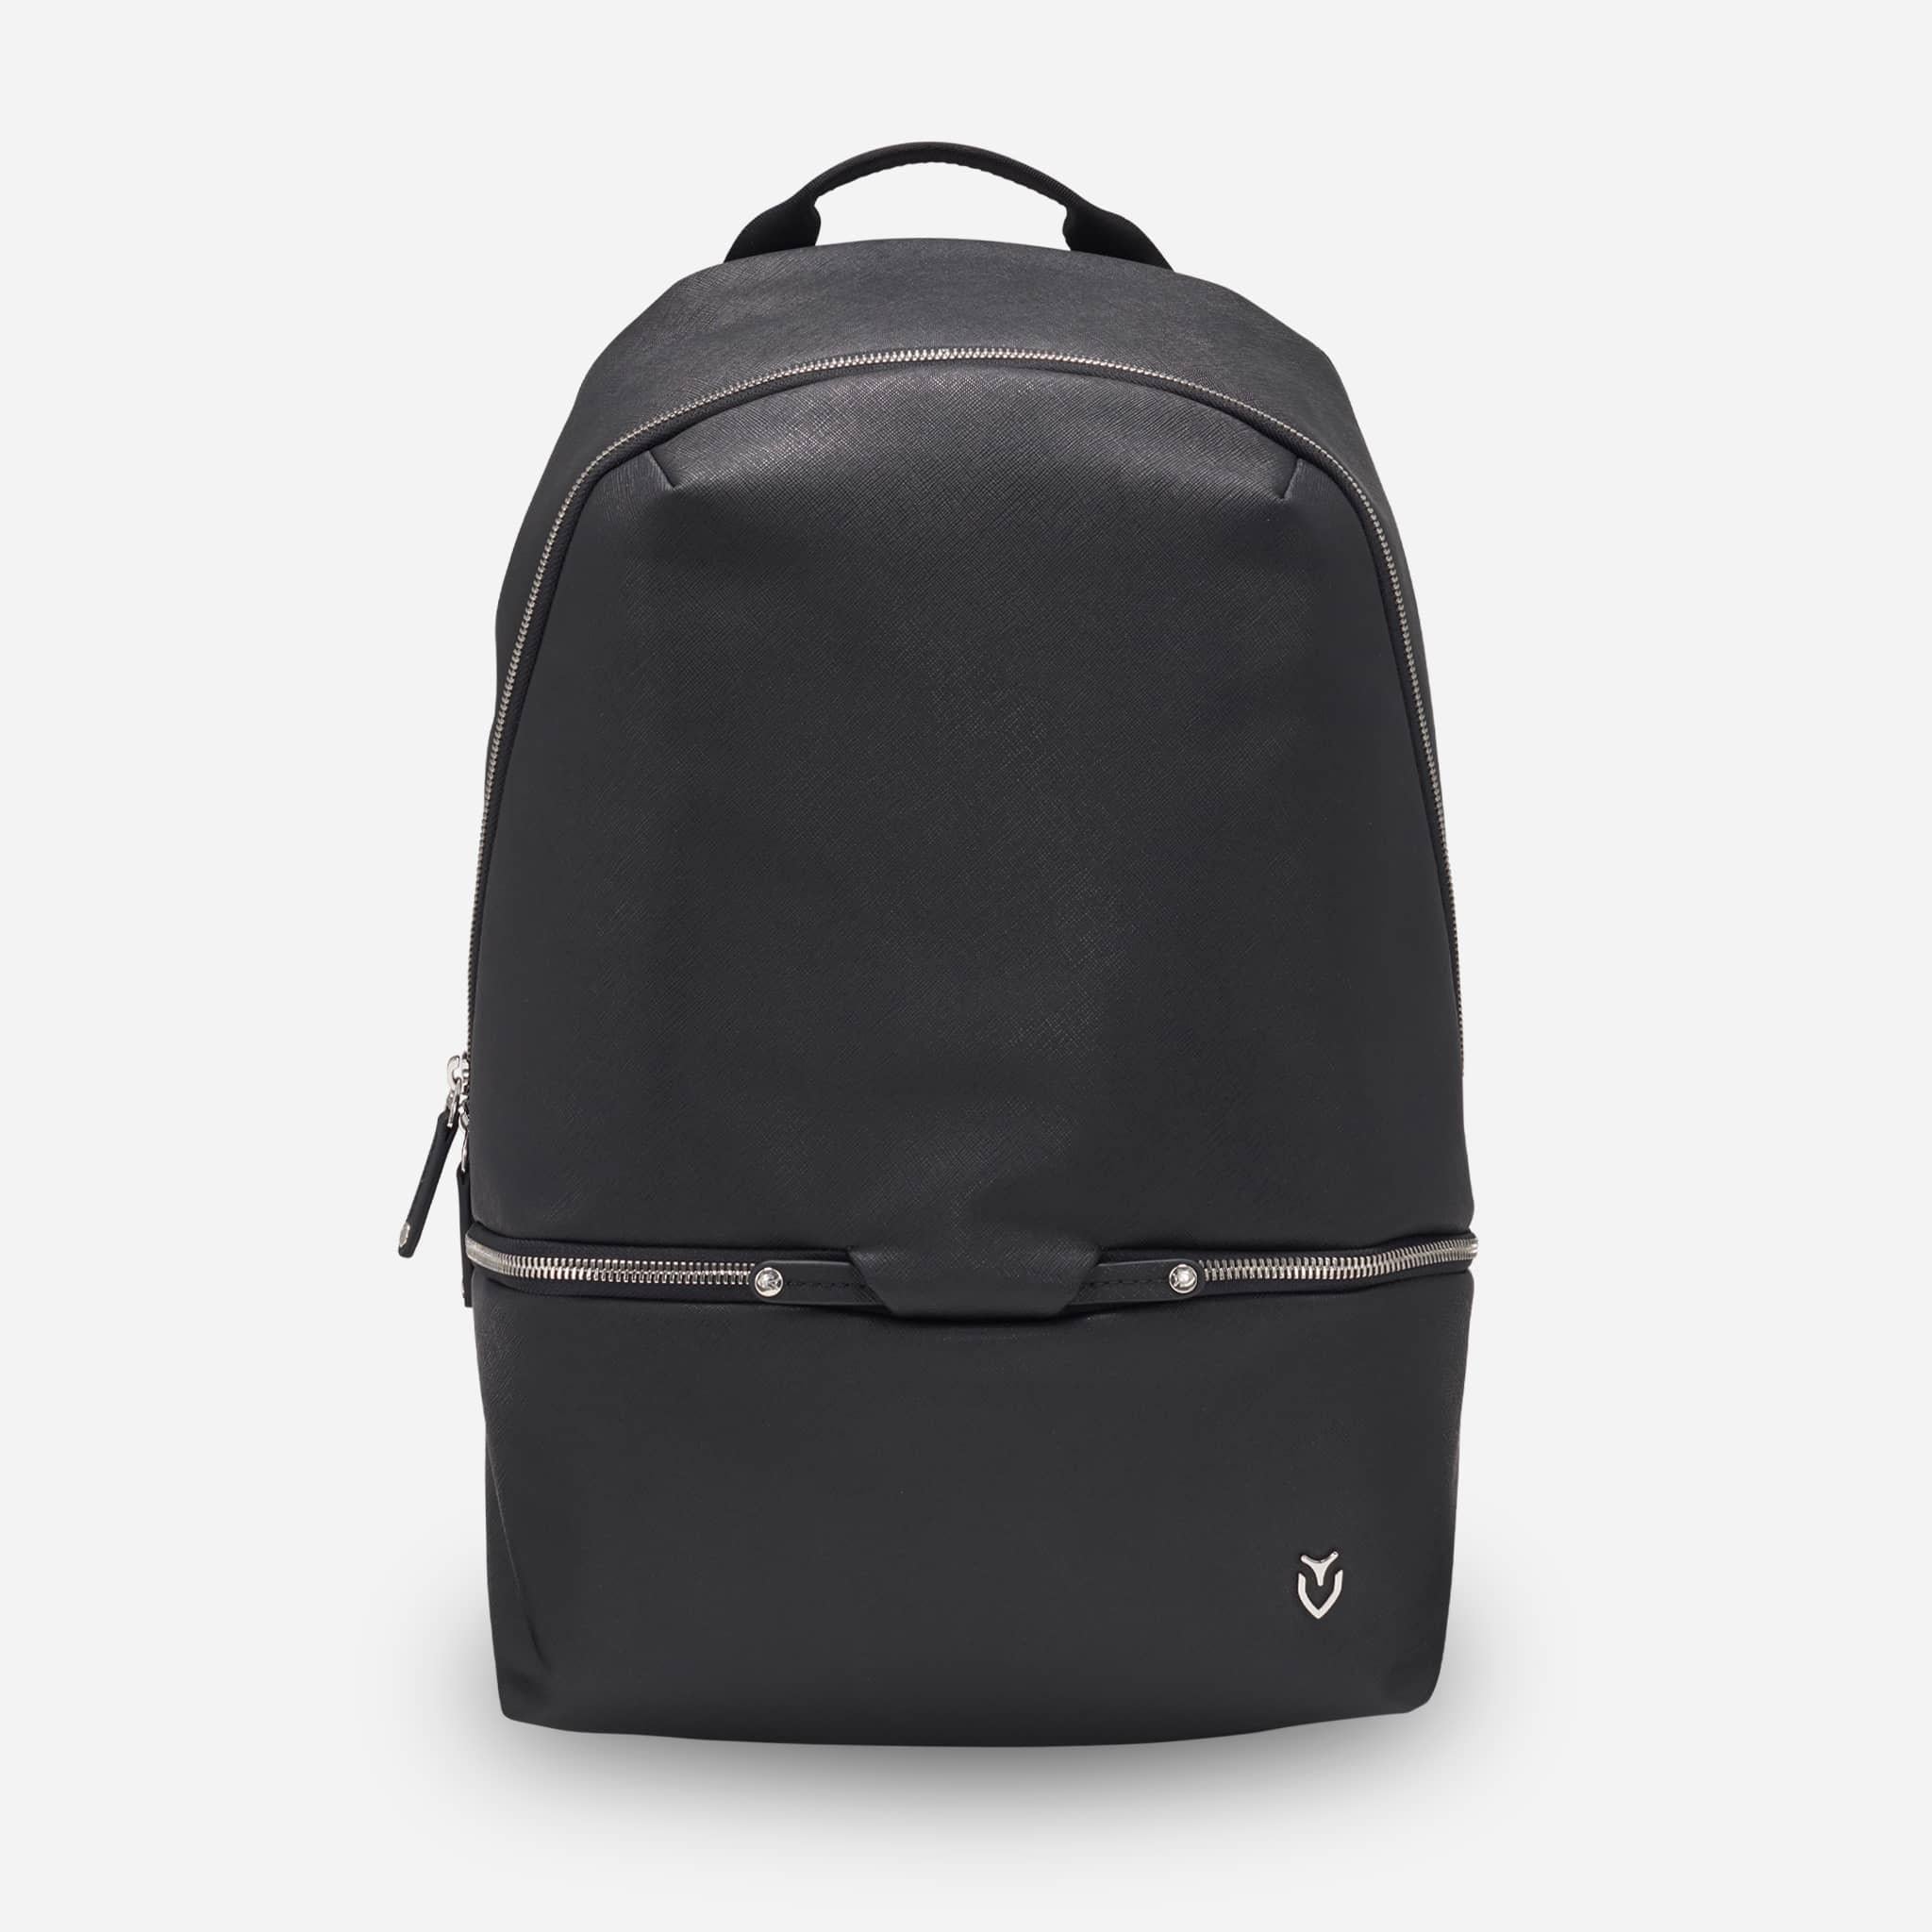 PrimeX Backpack | Travel Backpack | VESSEL